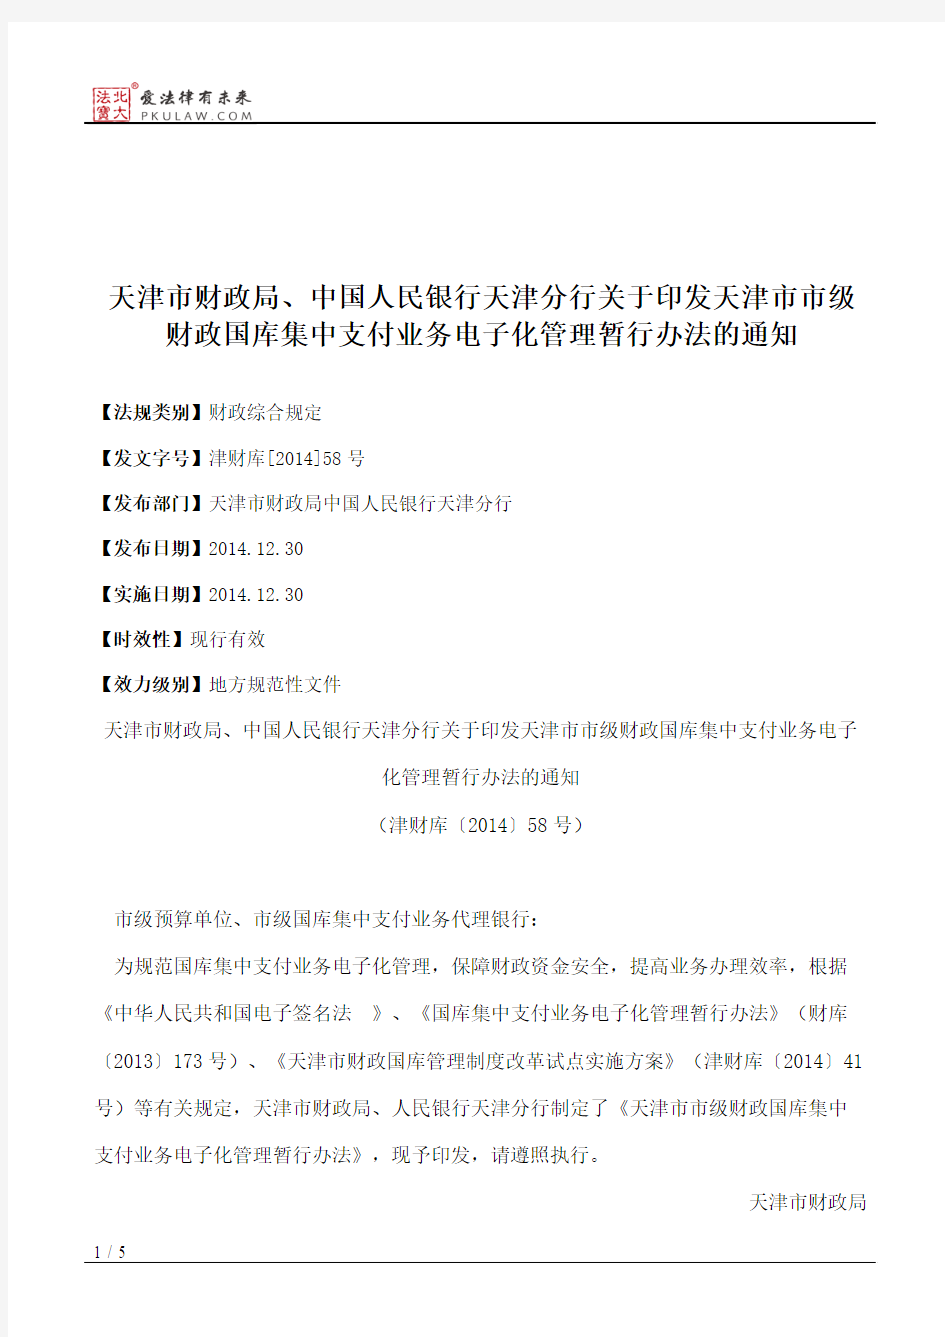 天津市财政局、中国人民银行天津分行关于印发天津市市级财政国库